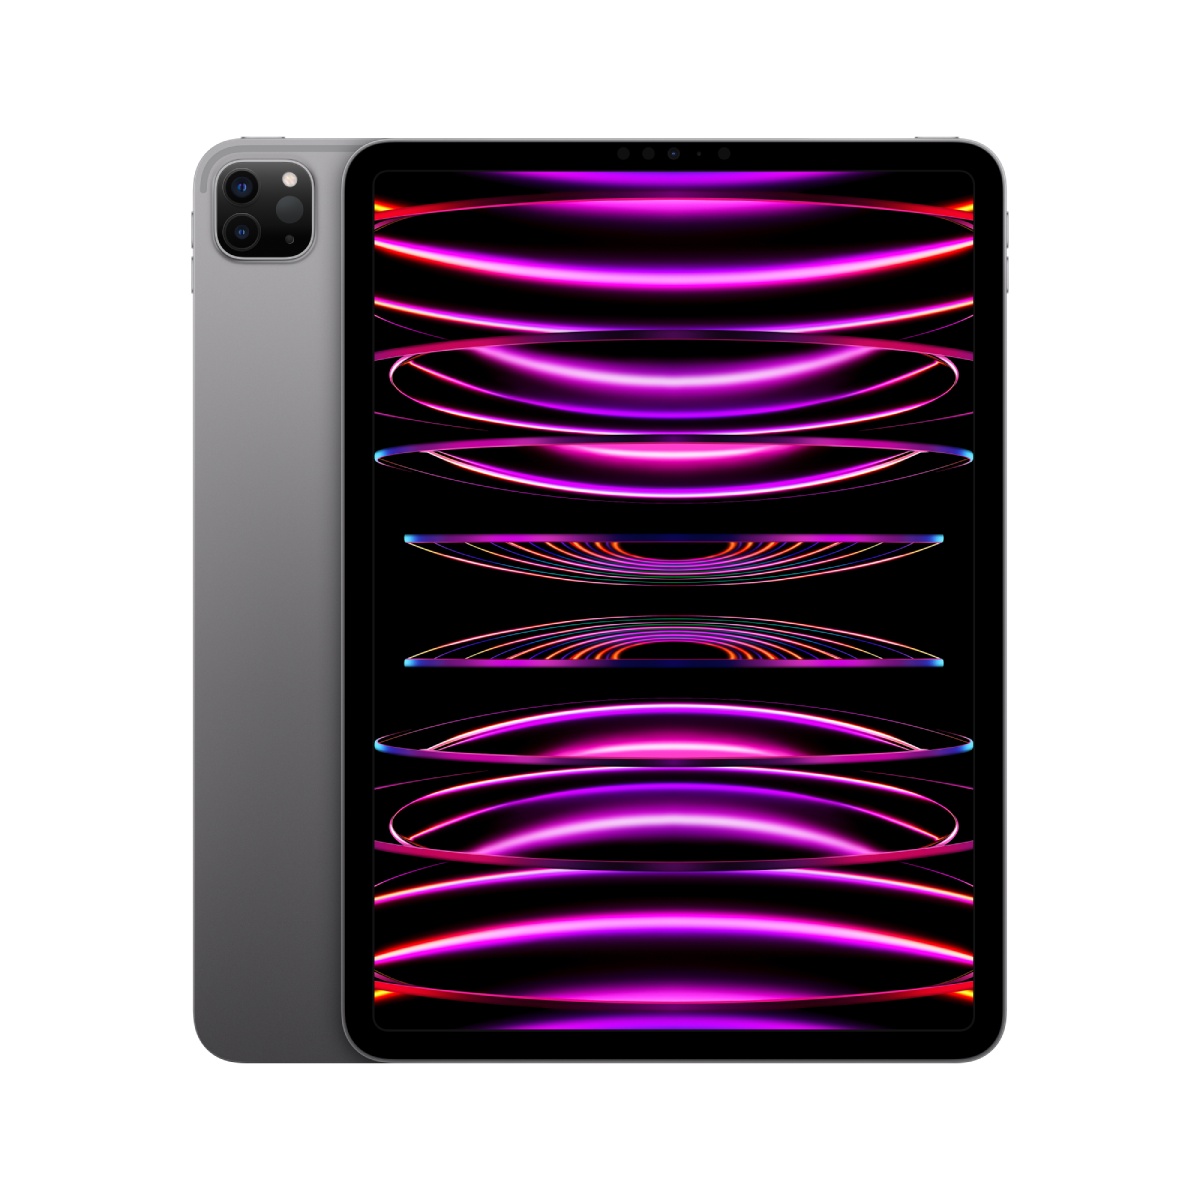 11-inch iPad Pro (4th Gen) Wi-Fi